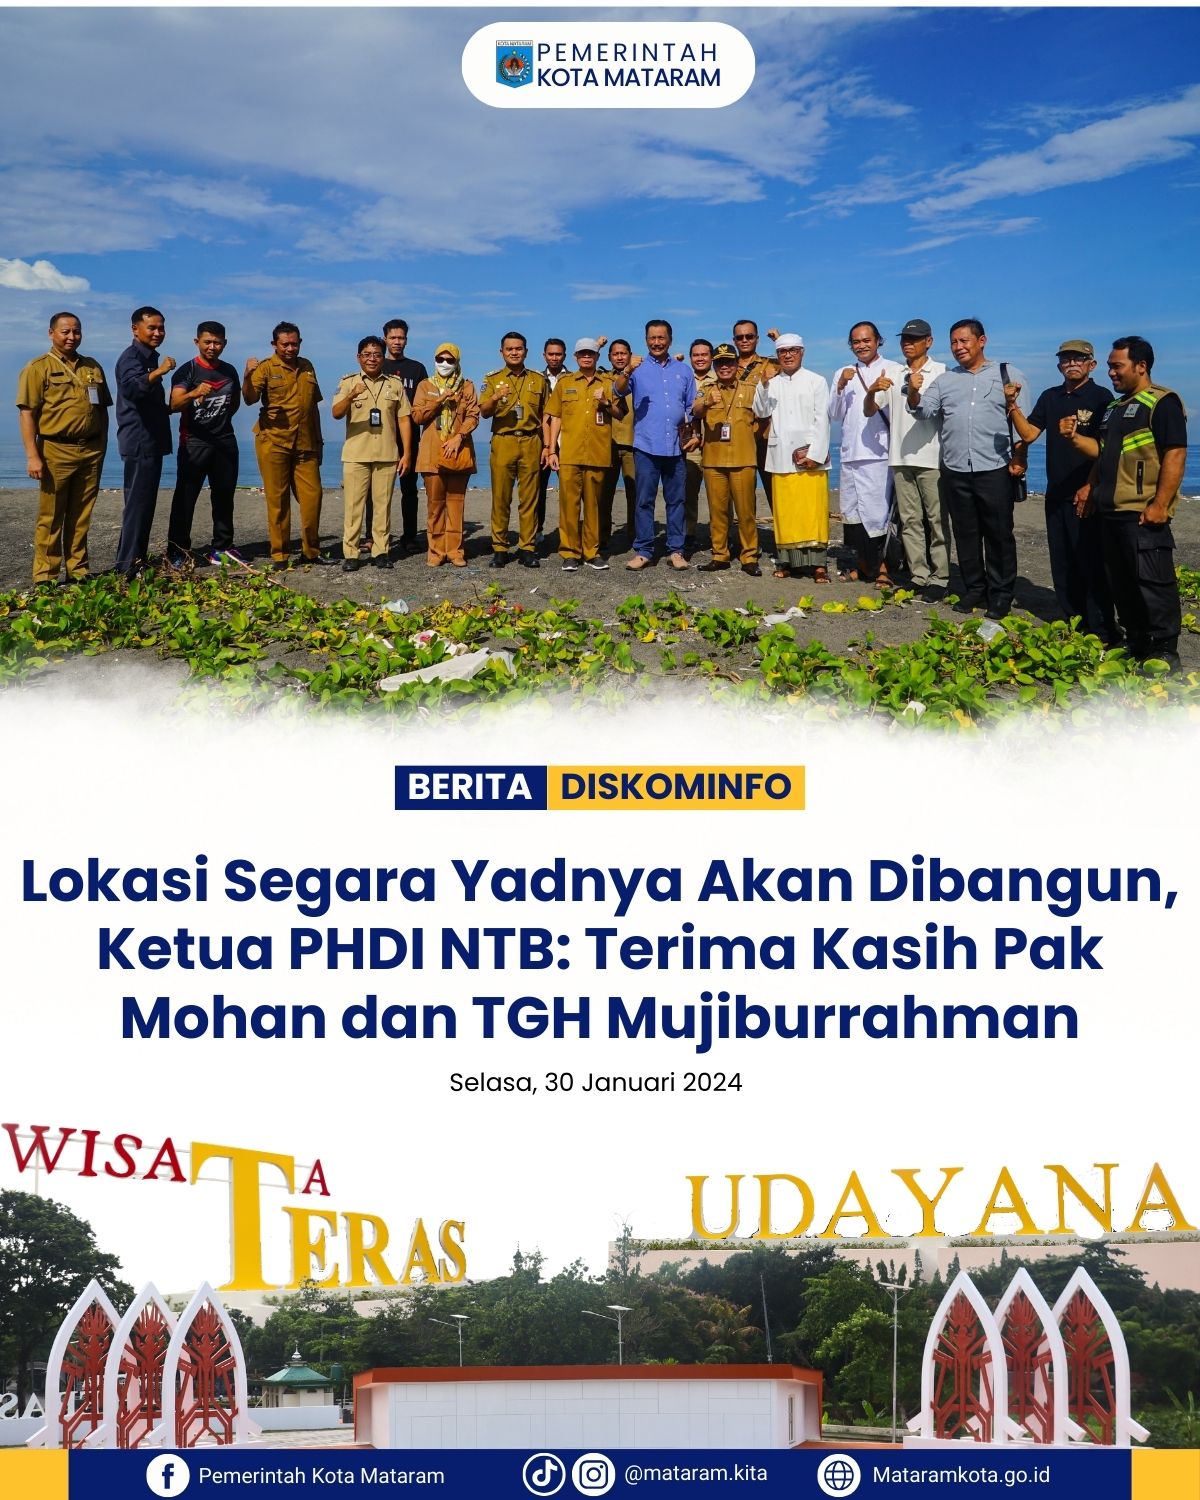 Lokasi Segara Yadnya Akan Dibangun, Ketua PHDI NTB: Terimakasih Pak Mohan Dan TGH Mujiburrahman